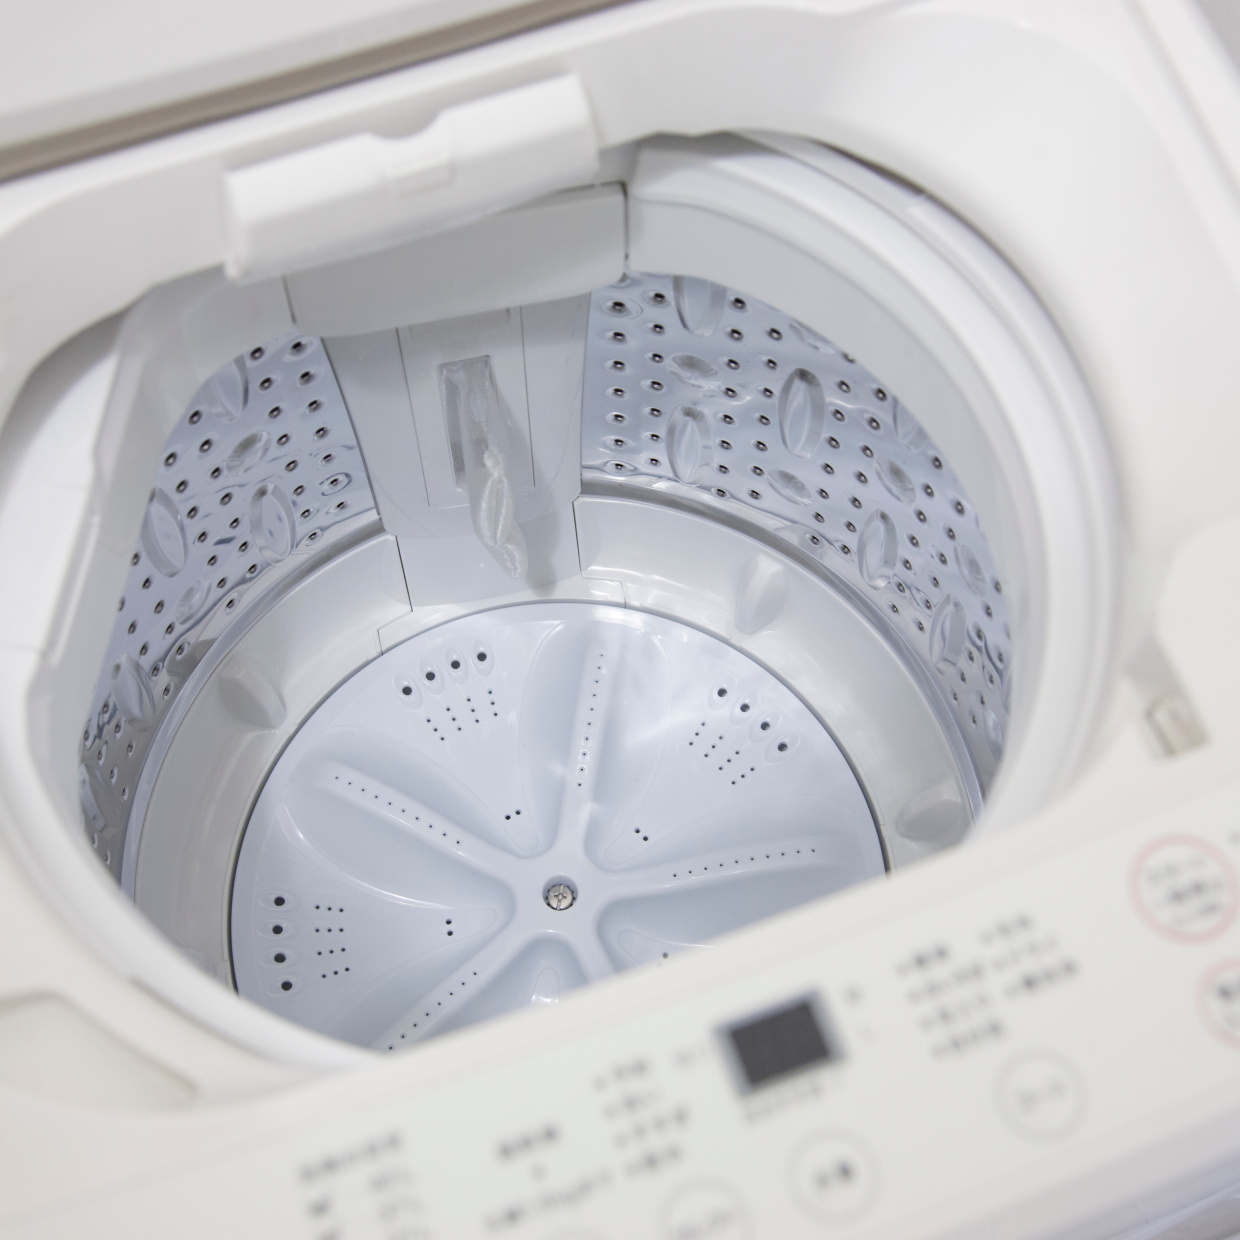  電気代の節約につながる「洗濯機の節電習慣３つ」“いつでも自動コースで洗う”はNG！ 